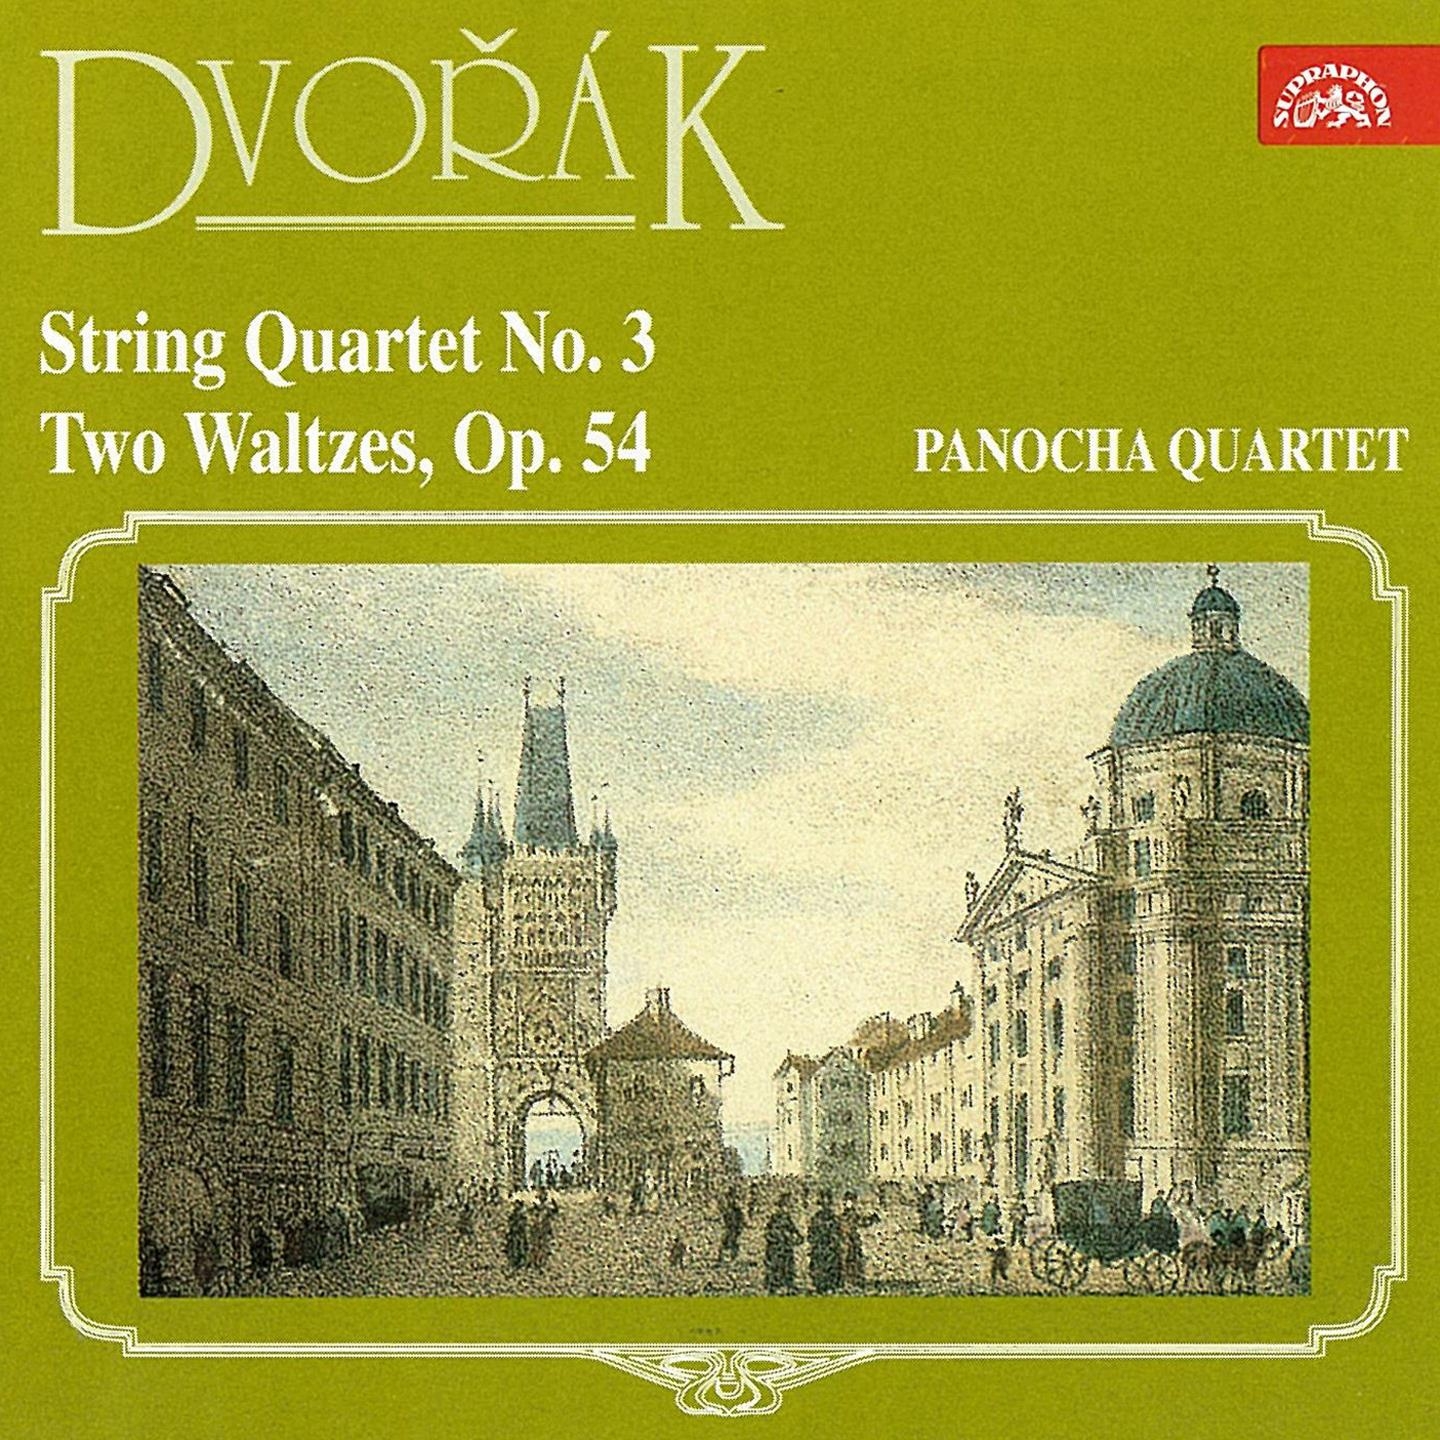 Dvoa k: String Quartet No. 3 and Waltzes